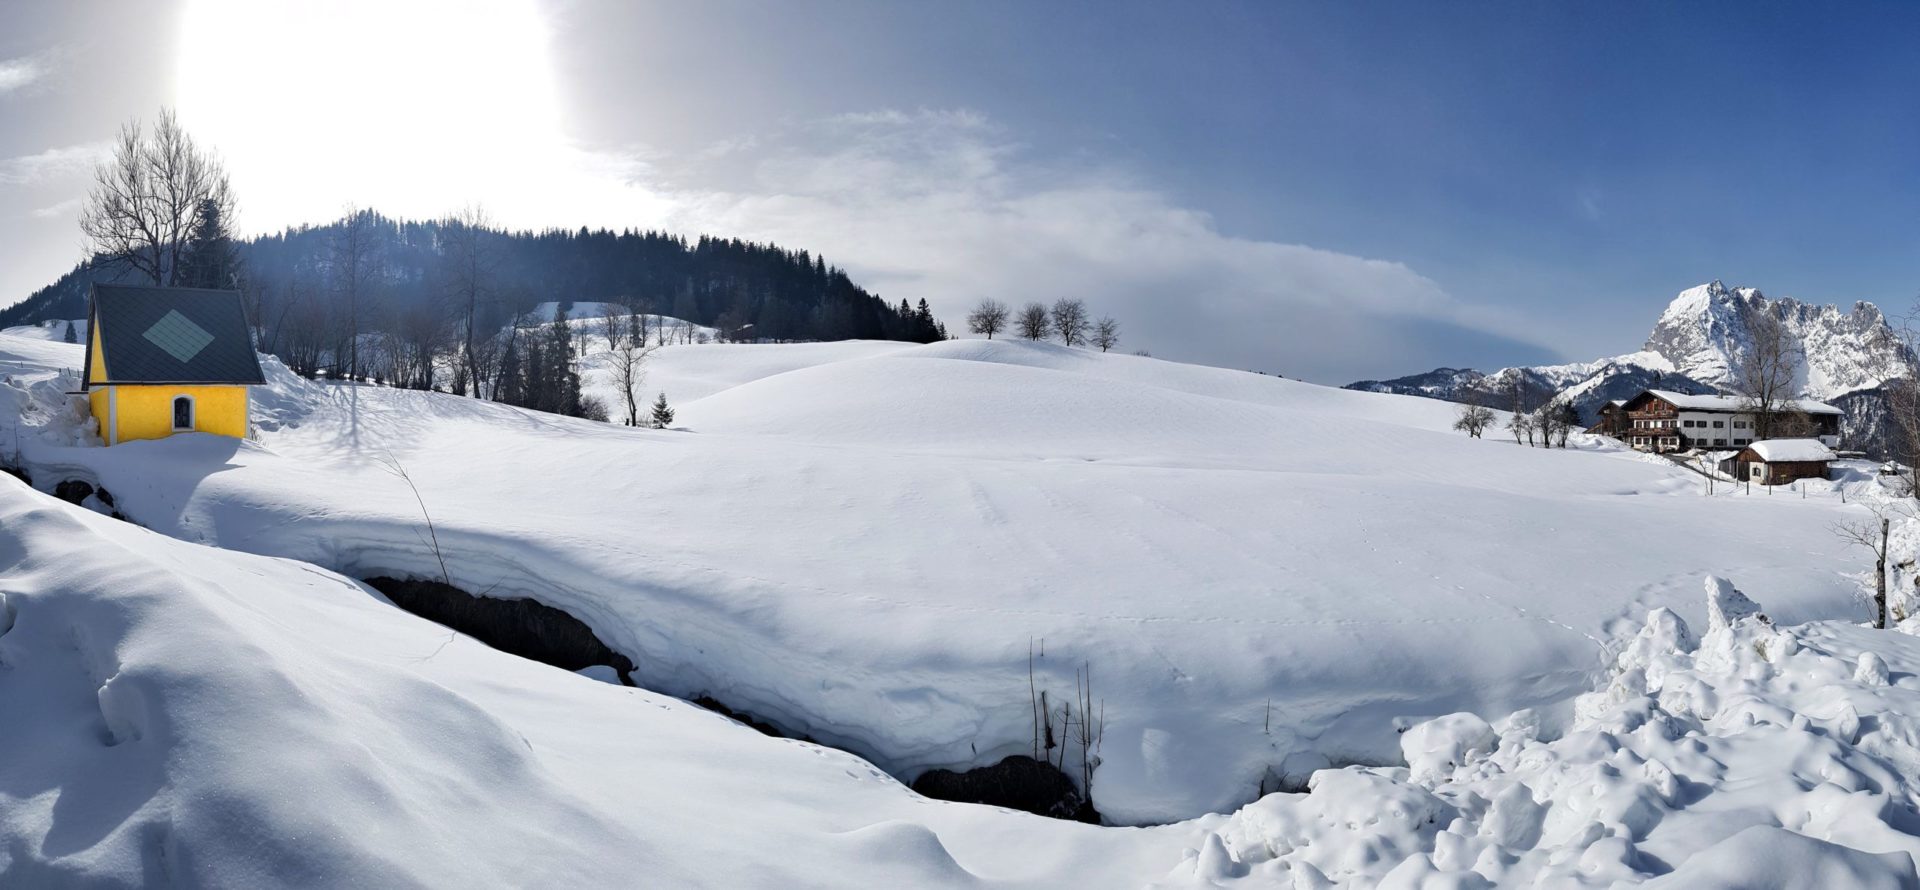 Die Landschaft und der Beginn der Schneeschuhwanderung in St. Johann in Tirol, Österreich.